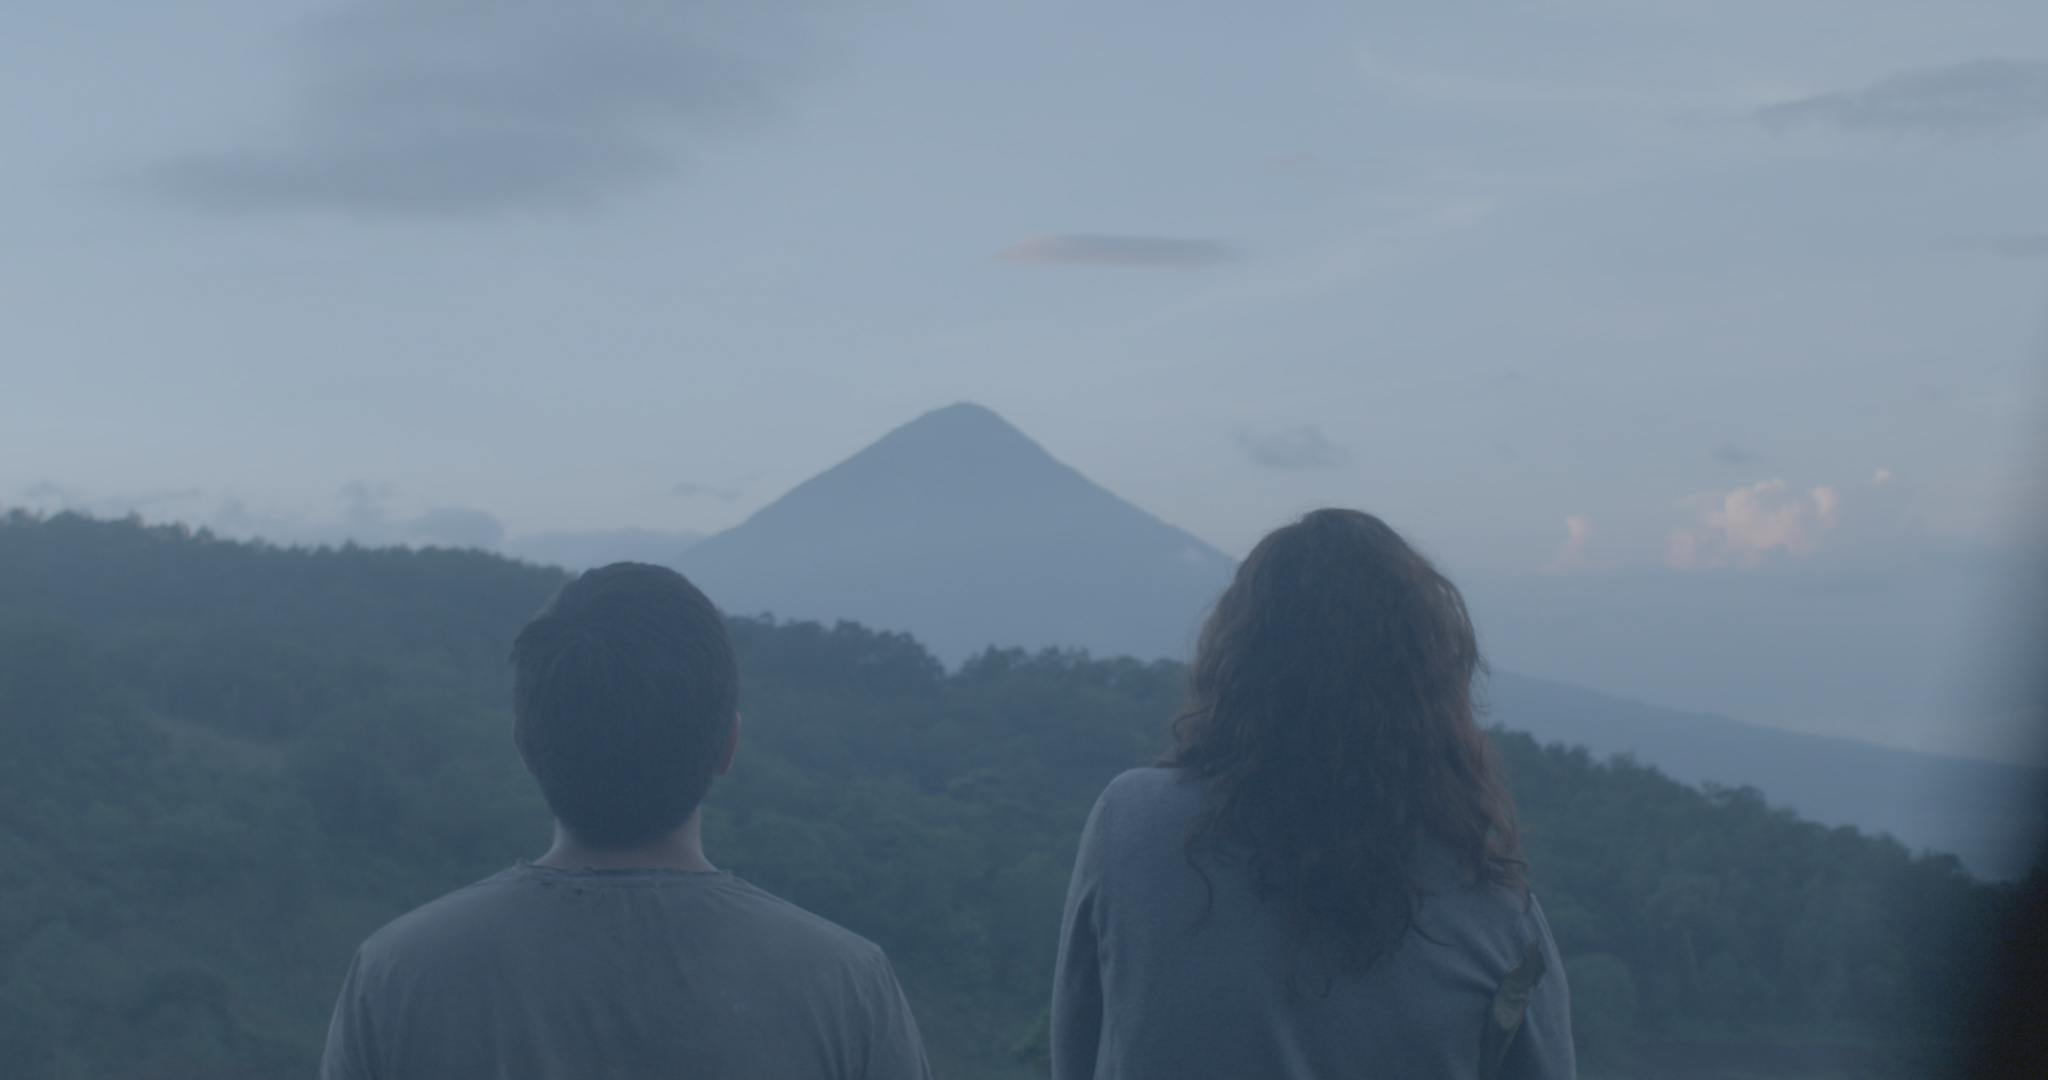 Primera Mirada: fondo único para cineastas de Centroamérica y el Caribe